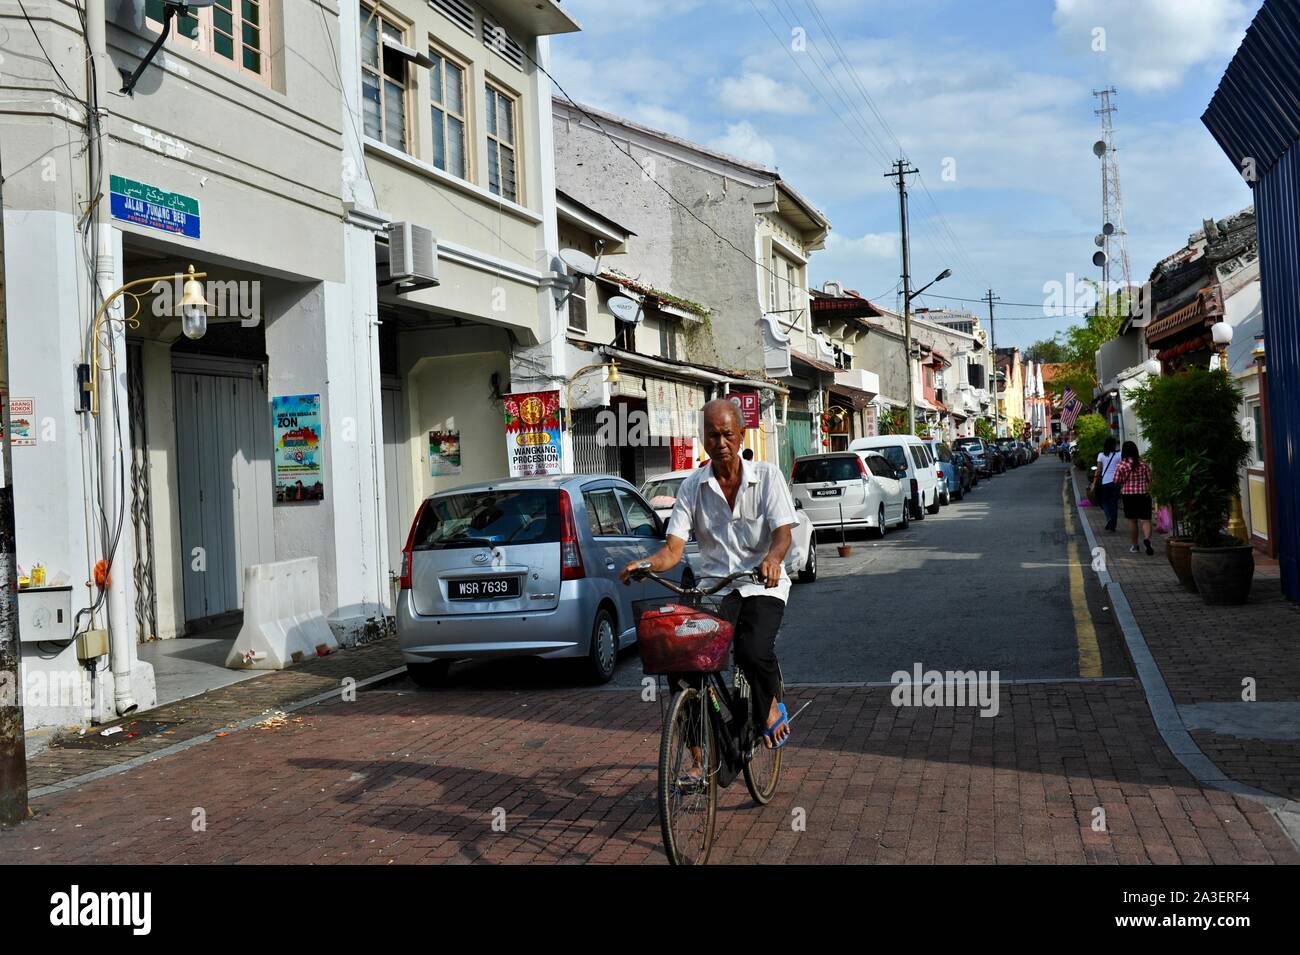 Jonker walk Malacca Malaysia Stock Photo - Alamy